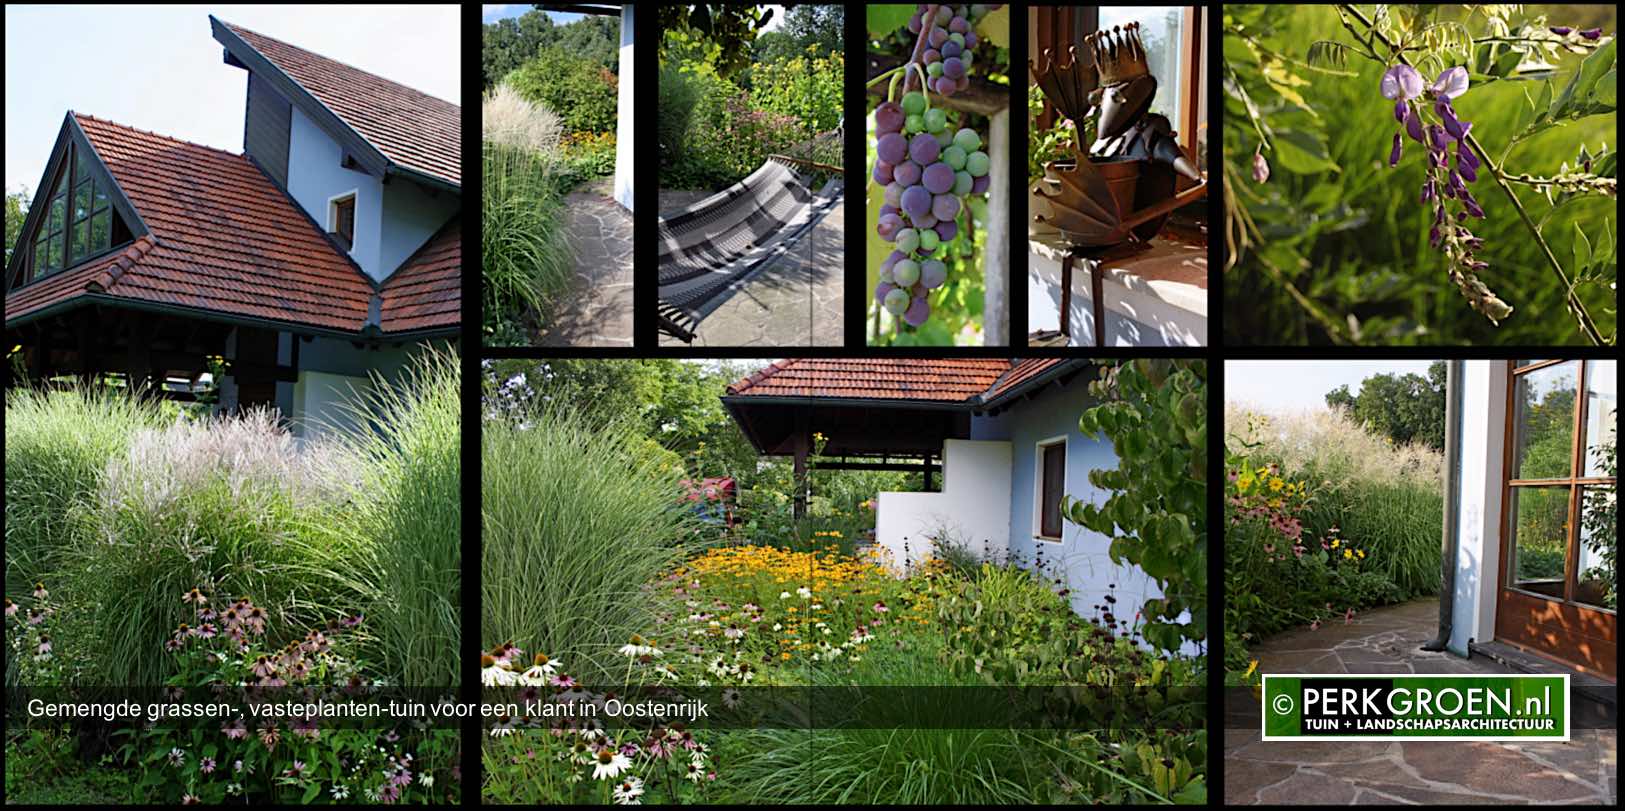 Gemengde grassen- vasteplanten-tuin voor een klant in Oostenrijk